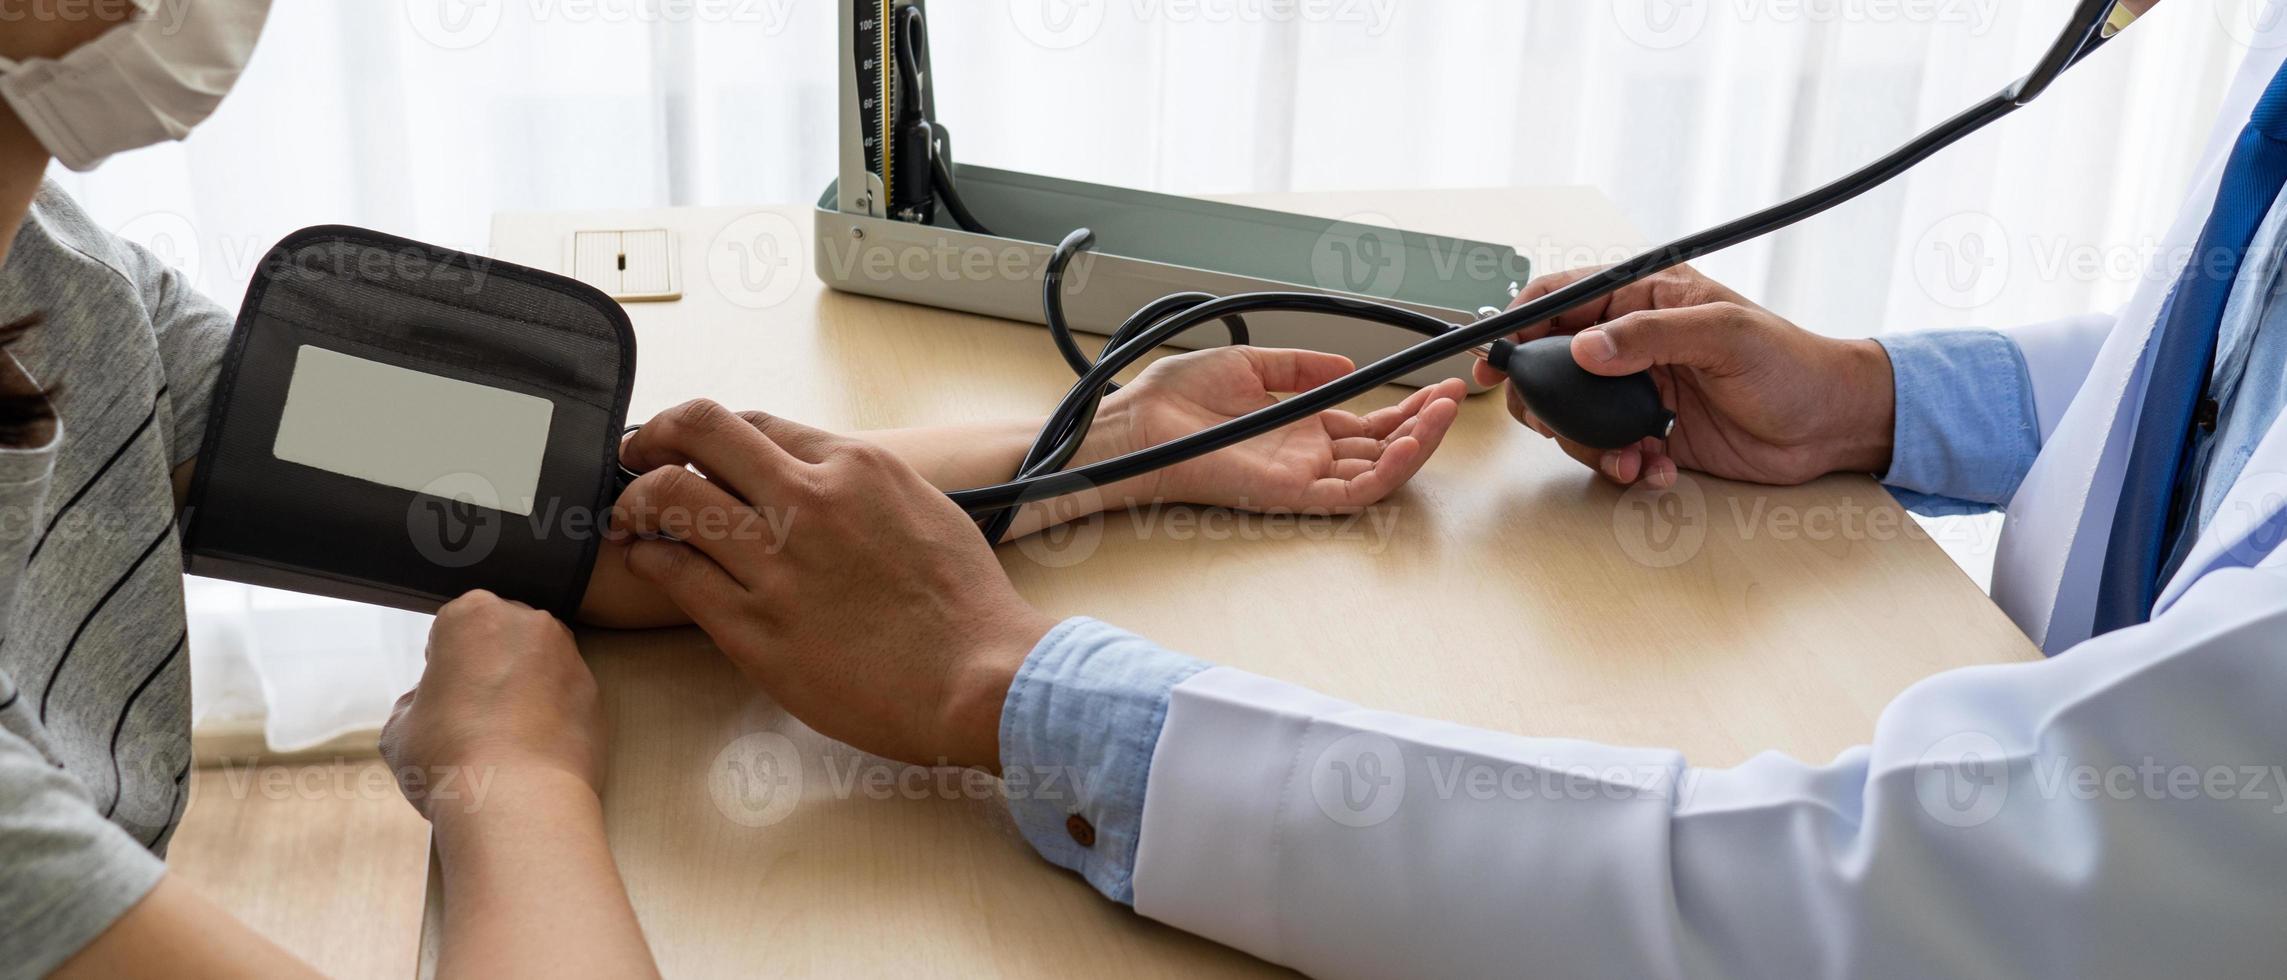 arts die bloeddrukmeter gebruikt om de bloeddruk van de patiënt te meten foto